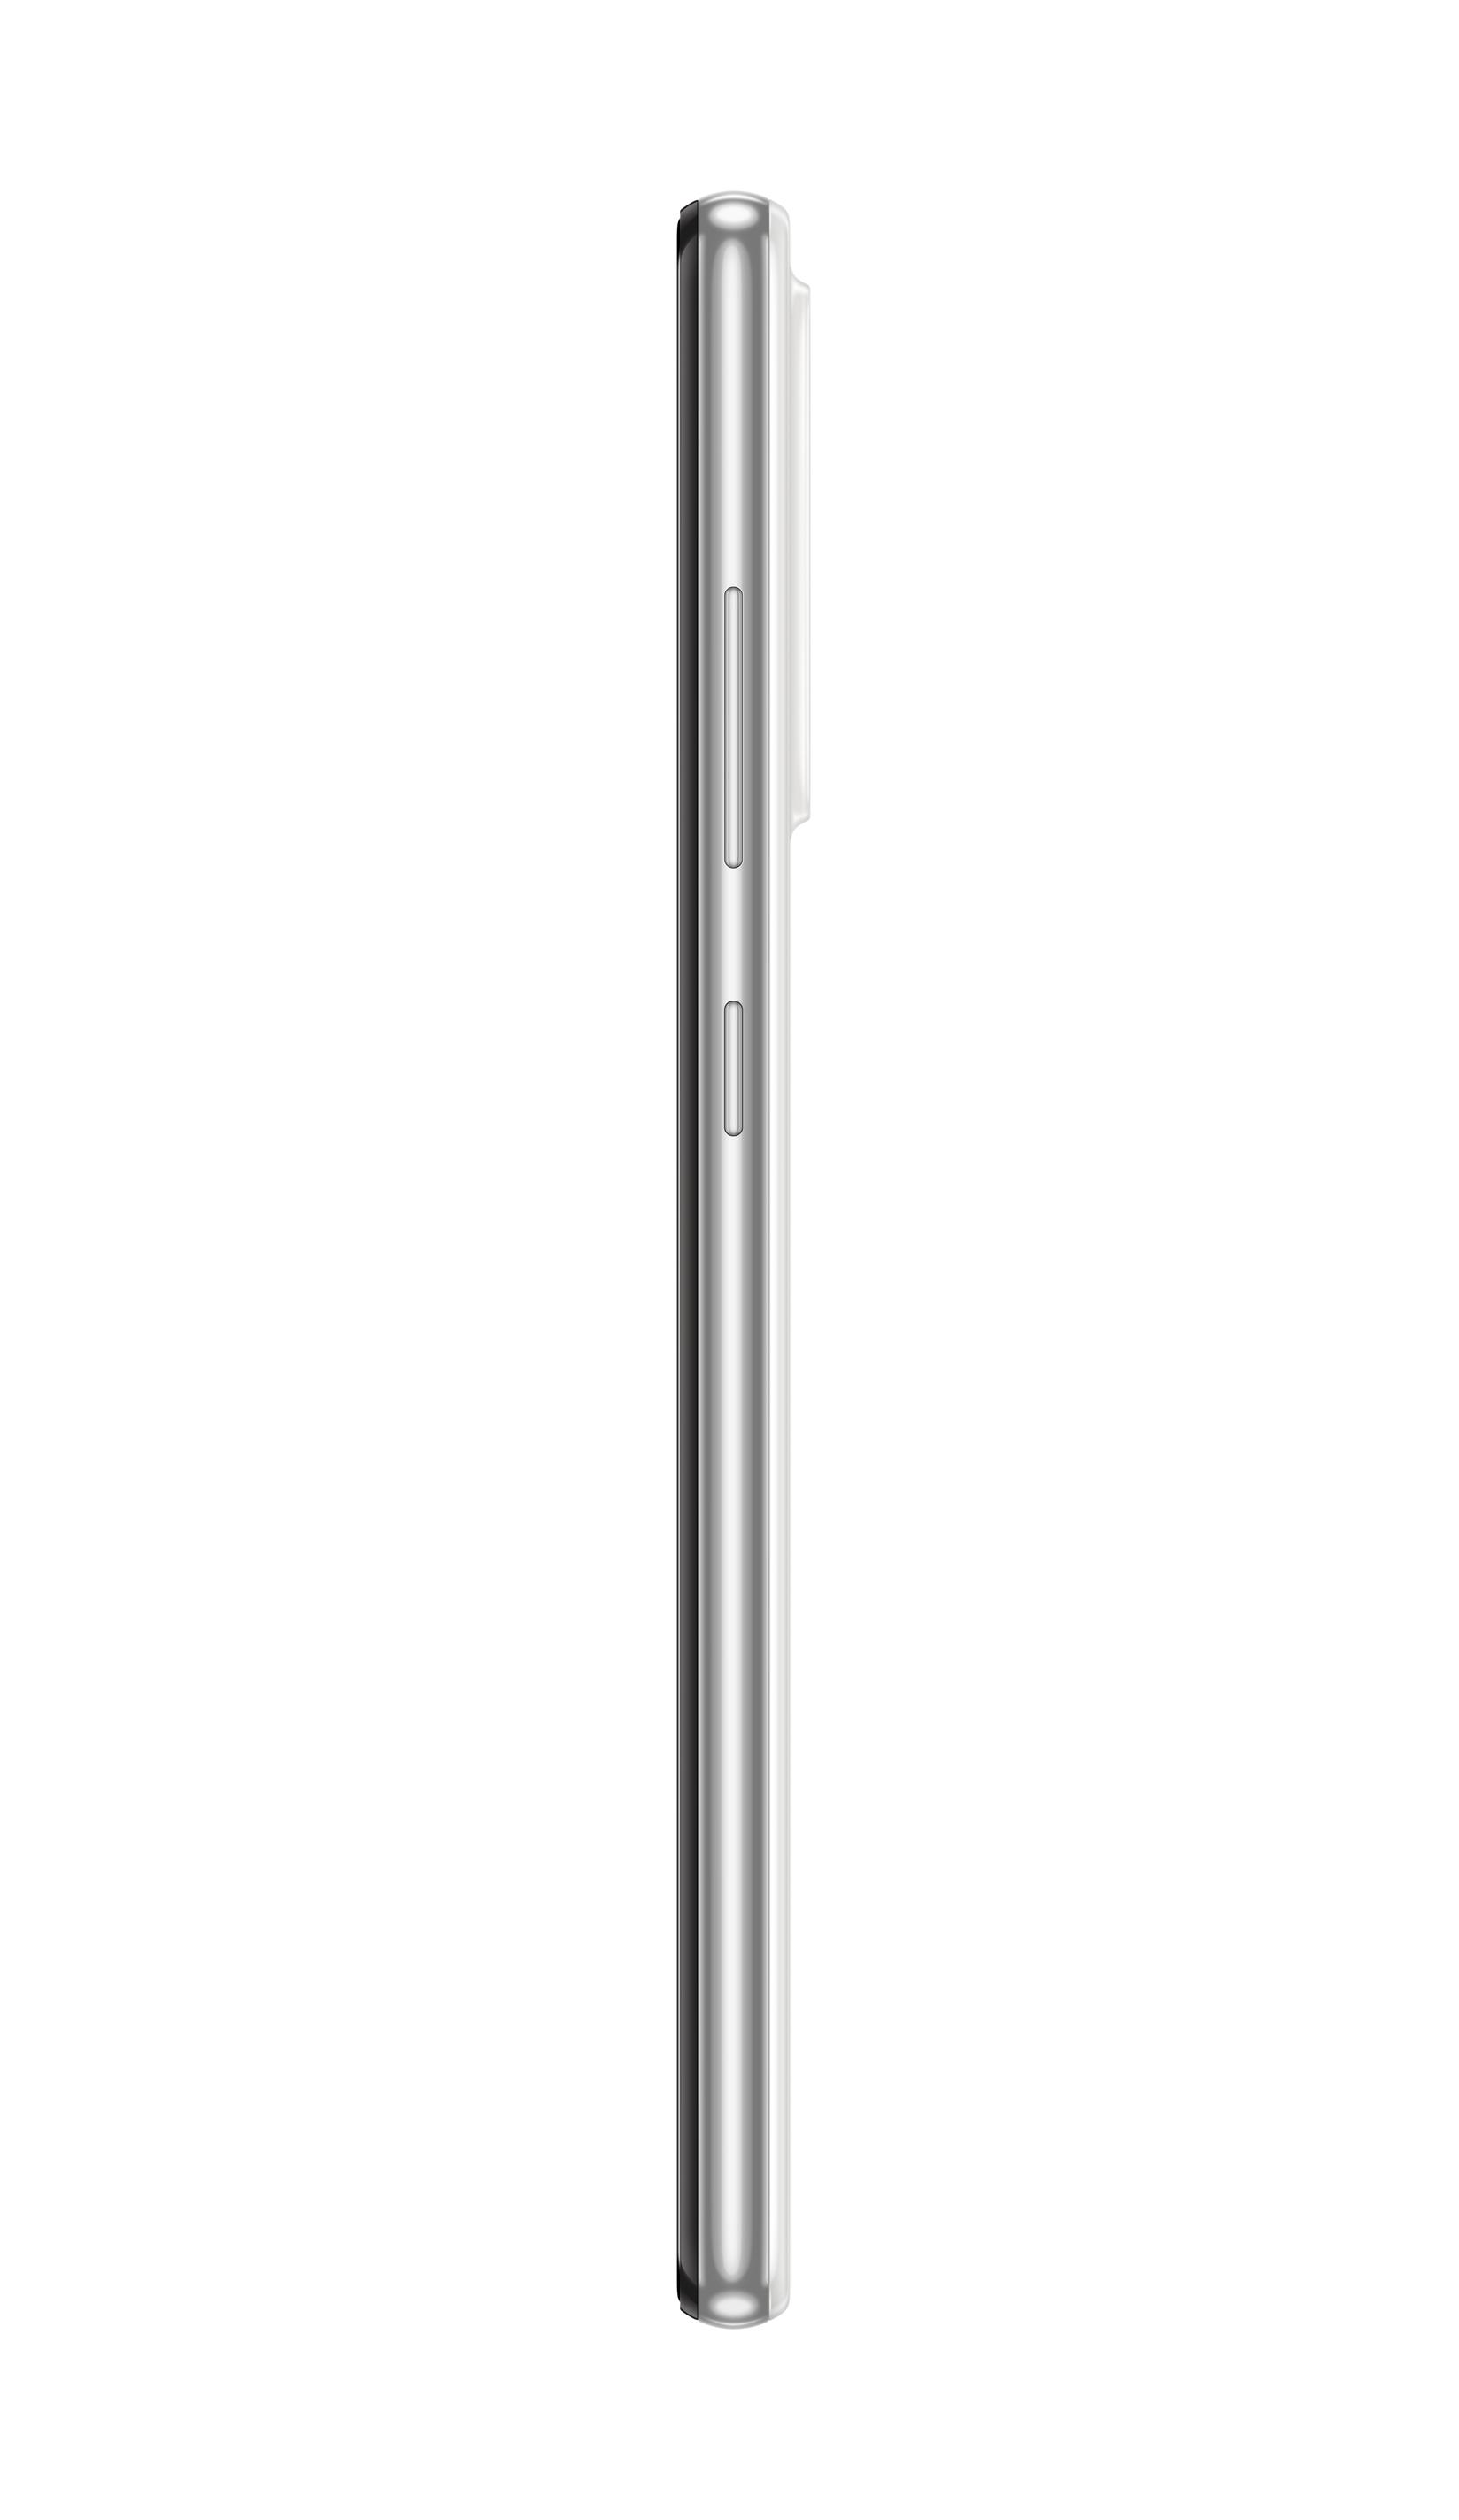 Slike Samsung Pametni telefon Galaxy SM-A525F beli